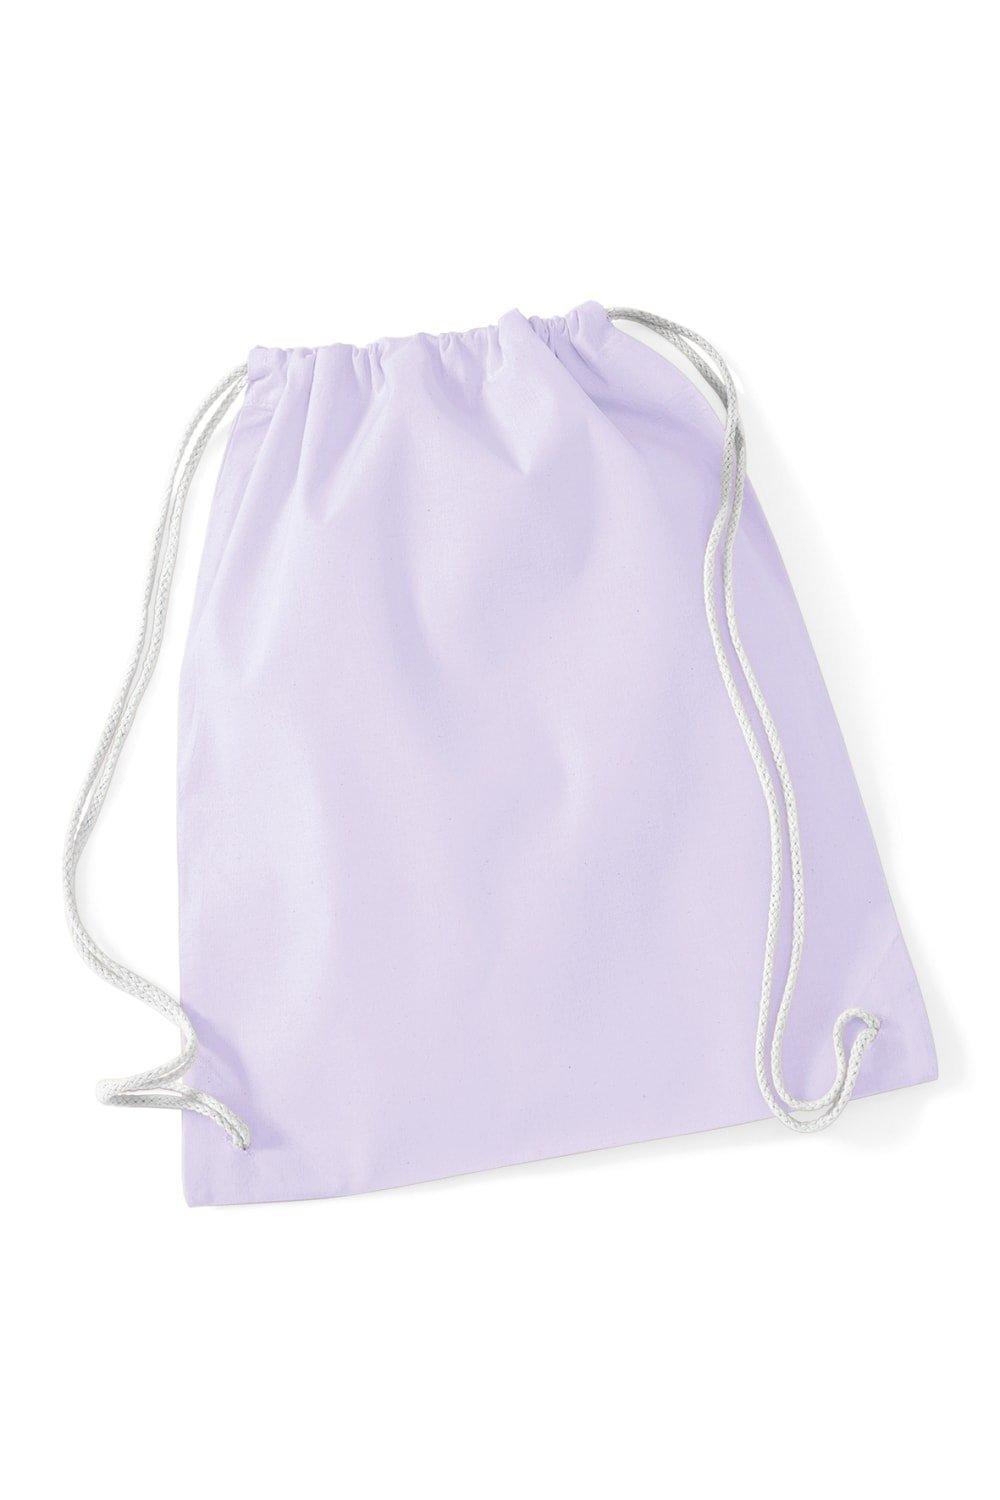 Хлопковая сумка Gymsac - 12 литров Westford Mill, фиолетовый